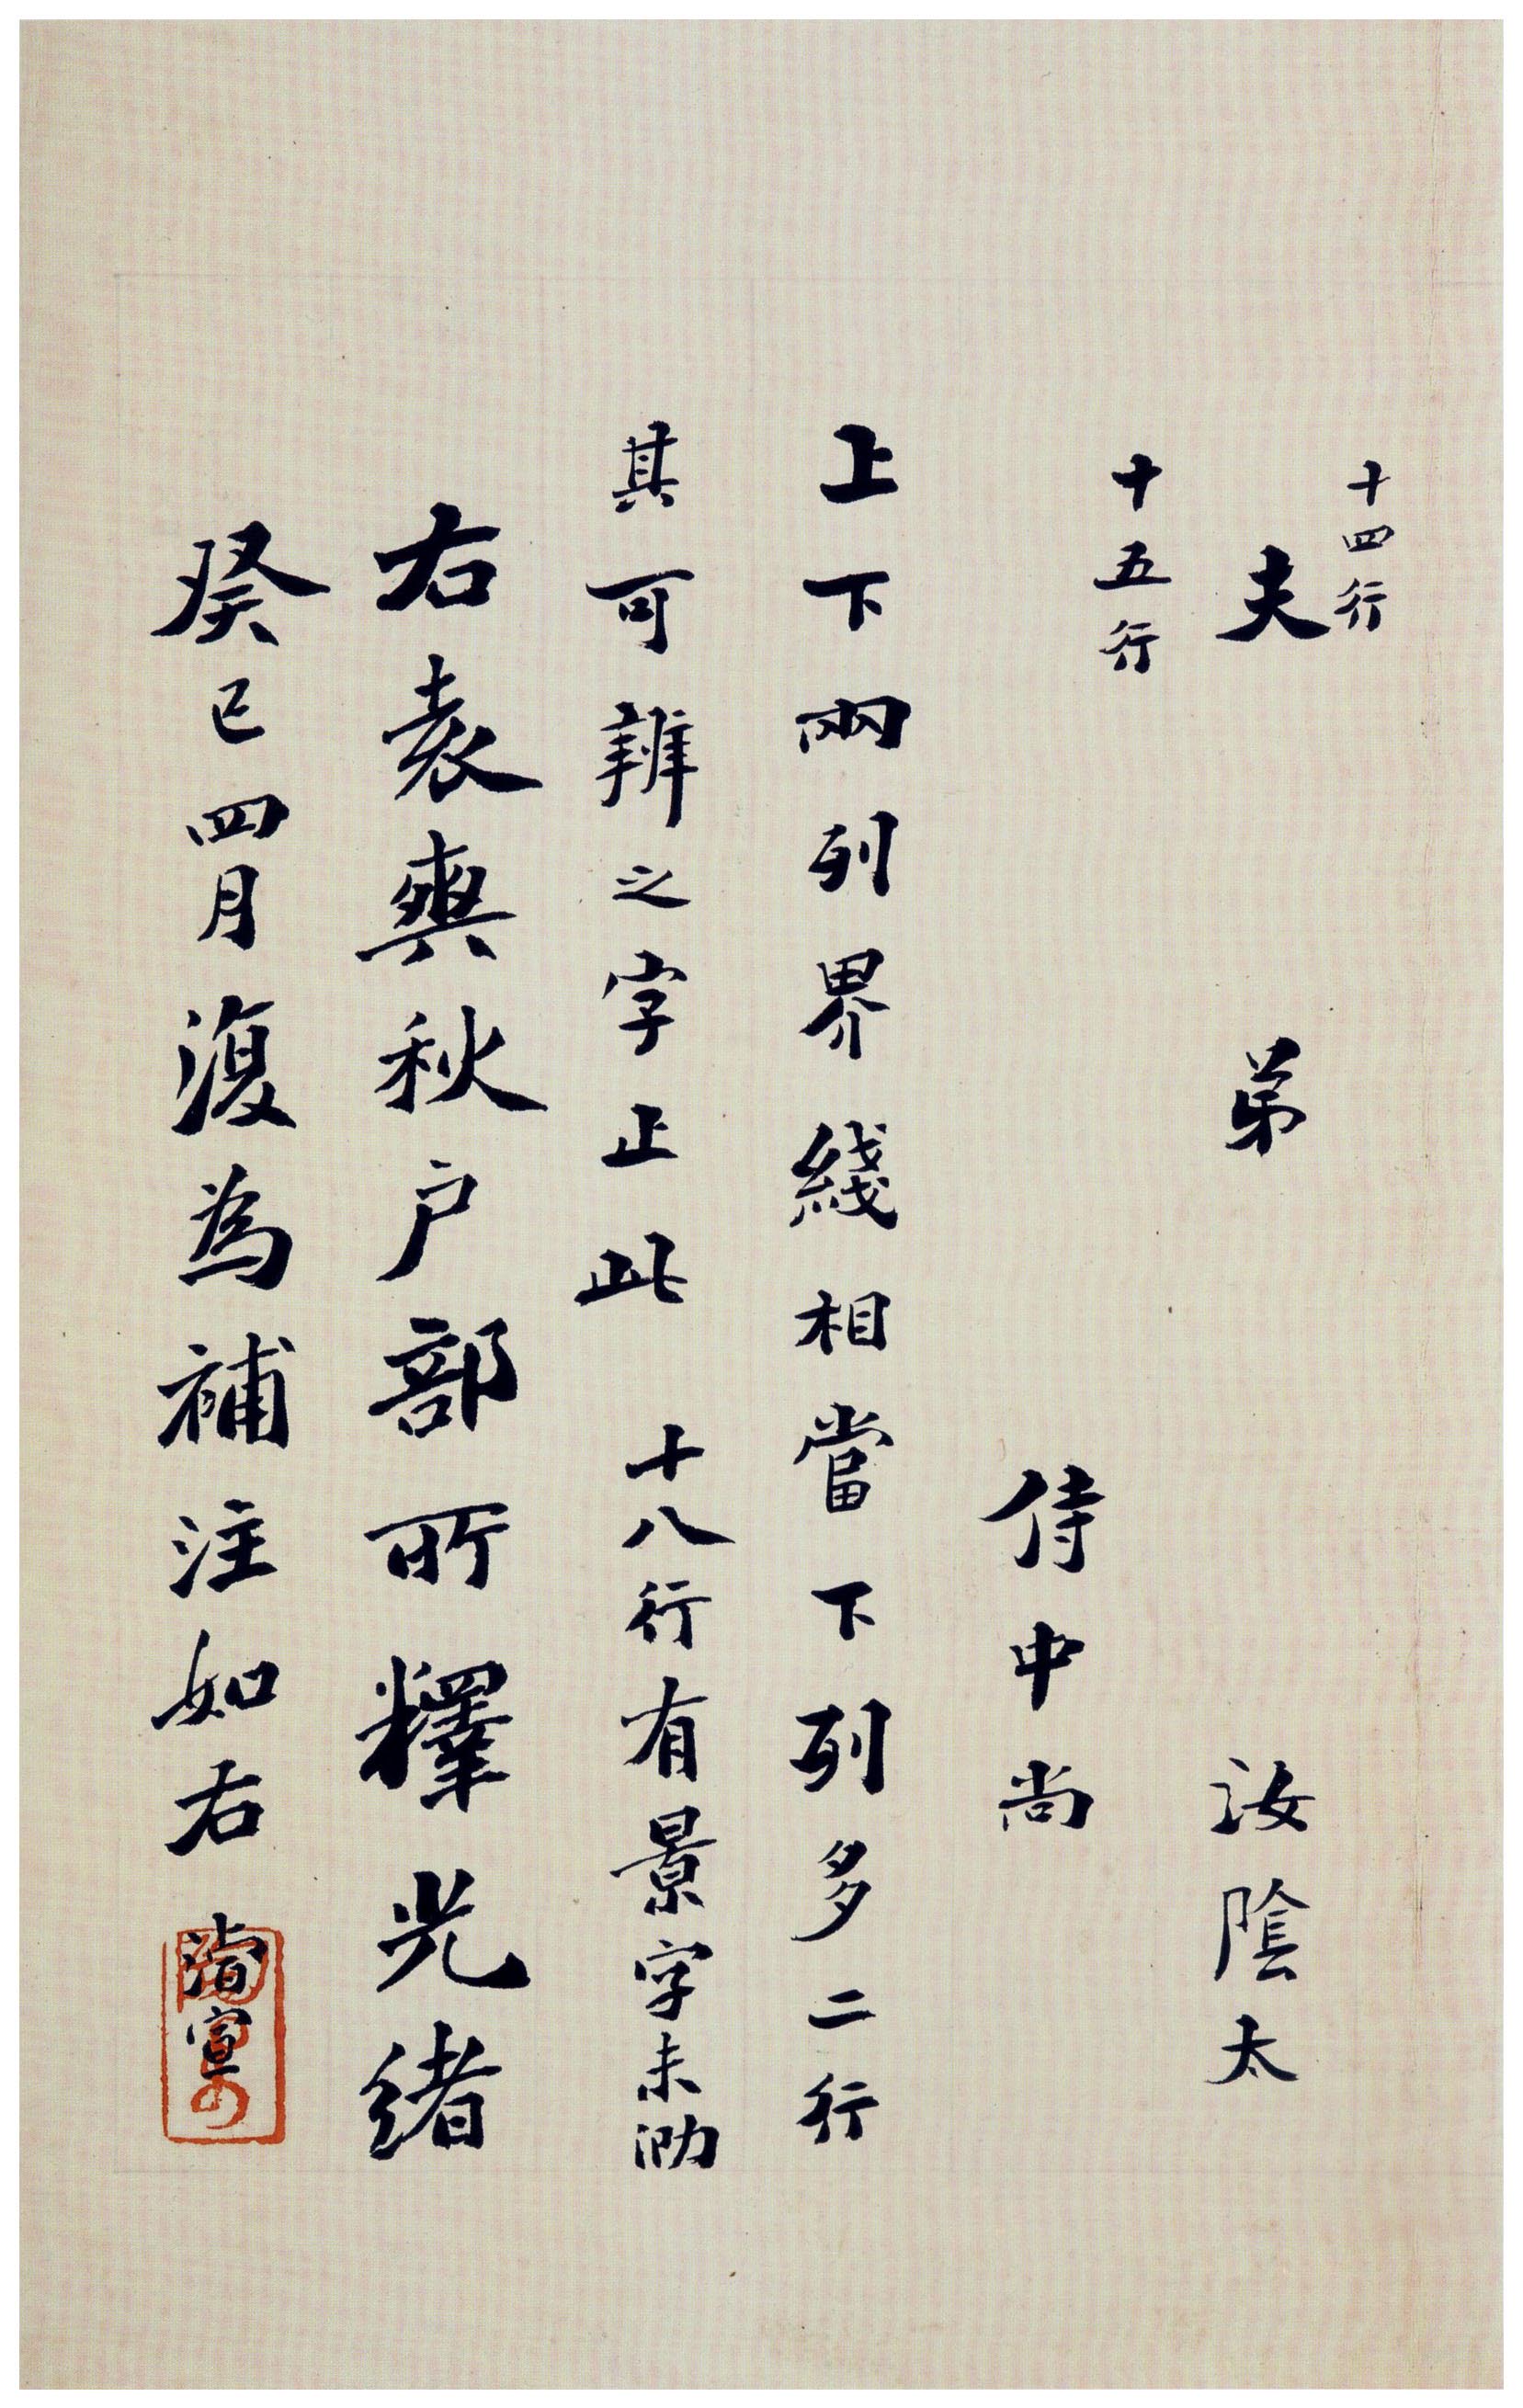 北魏《刁遵墓志》题签与题跋(图27)